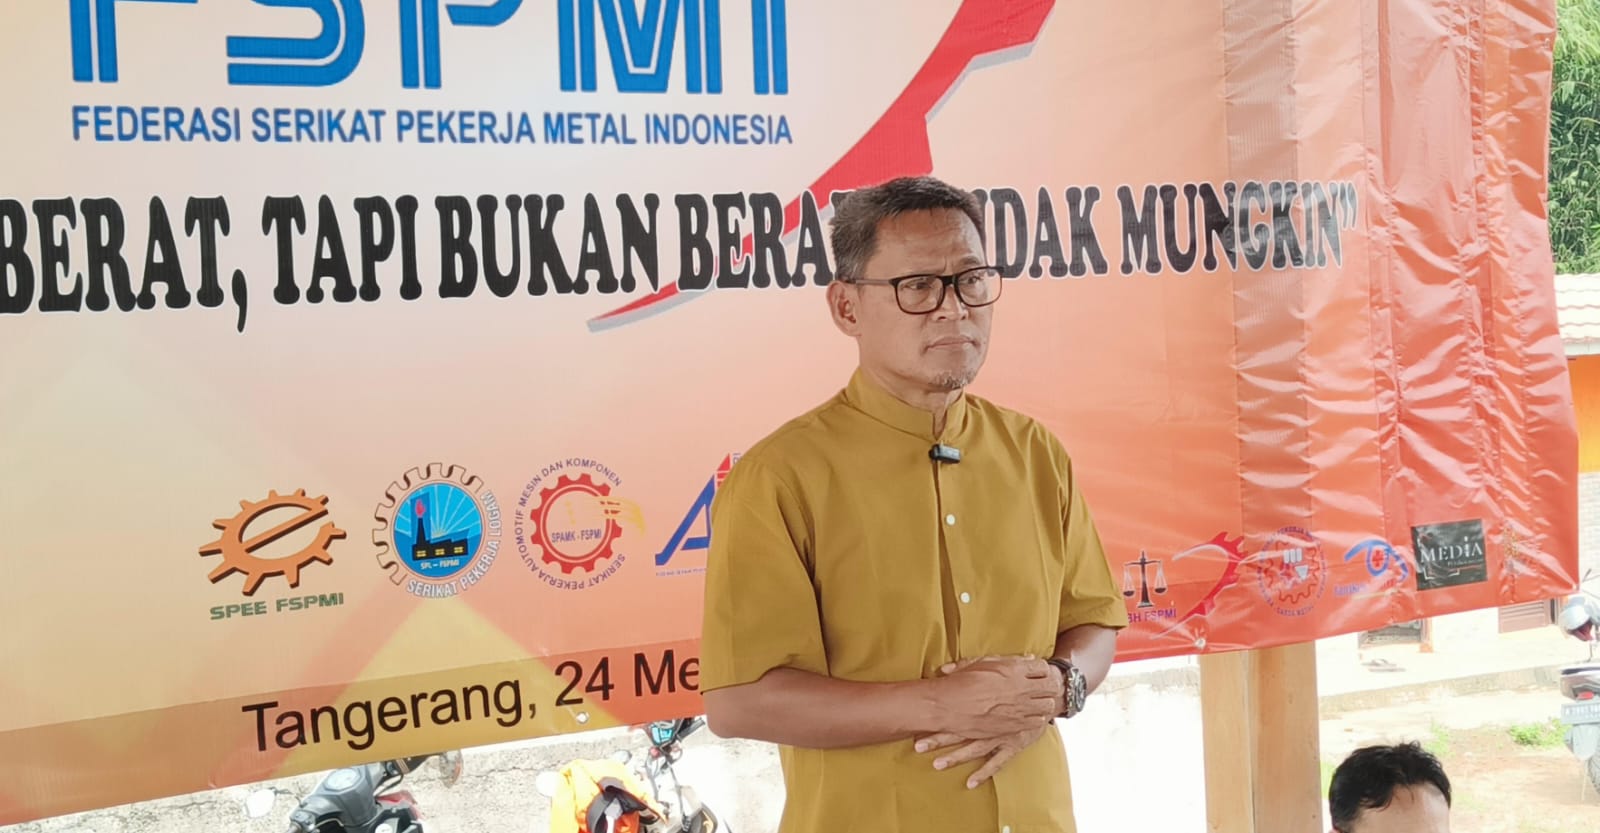 Rawil DPW FSPMI Banten : Semua Terasa Berat Bukan Berarti Tidak Mungkin